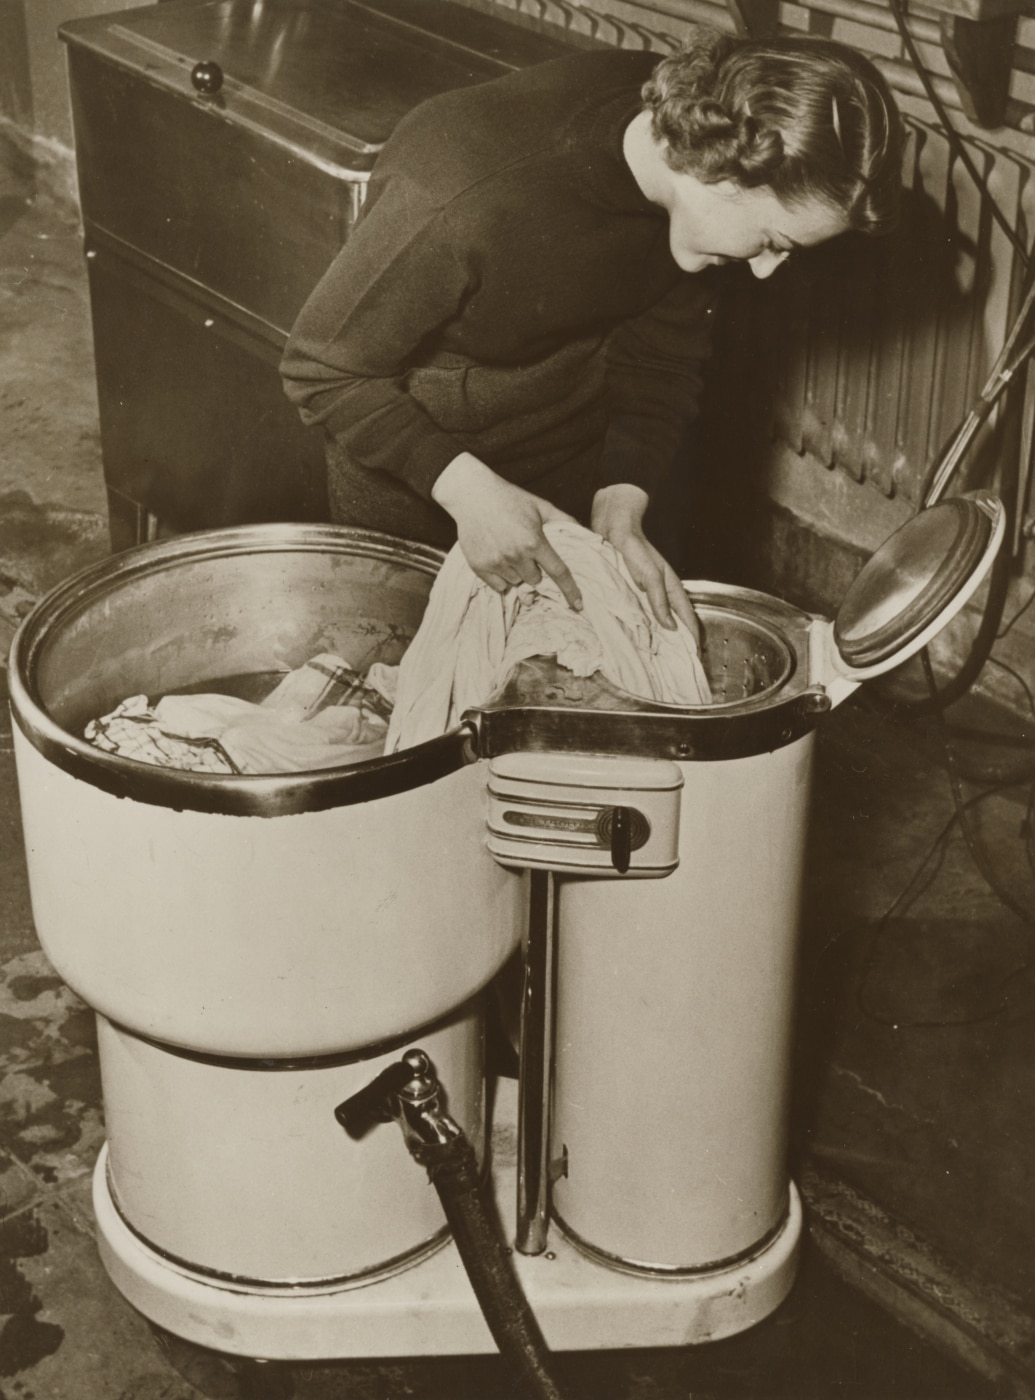 Е 20 машинка стиральная. Уильям Блэкстоун первая стиральная машина. Первая стиральная машина Алва Фишер. Стиральная машина Thor 1908. Эллен Эглуи стиральная машина.